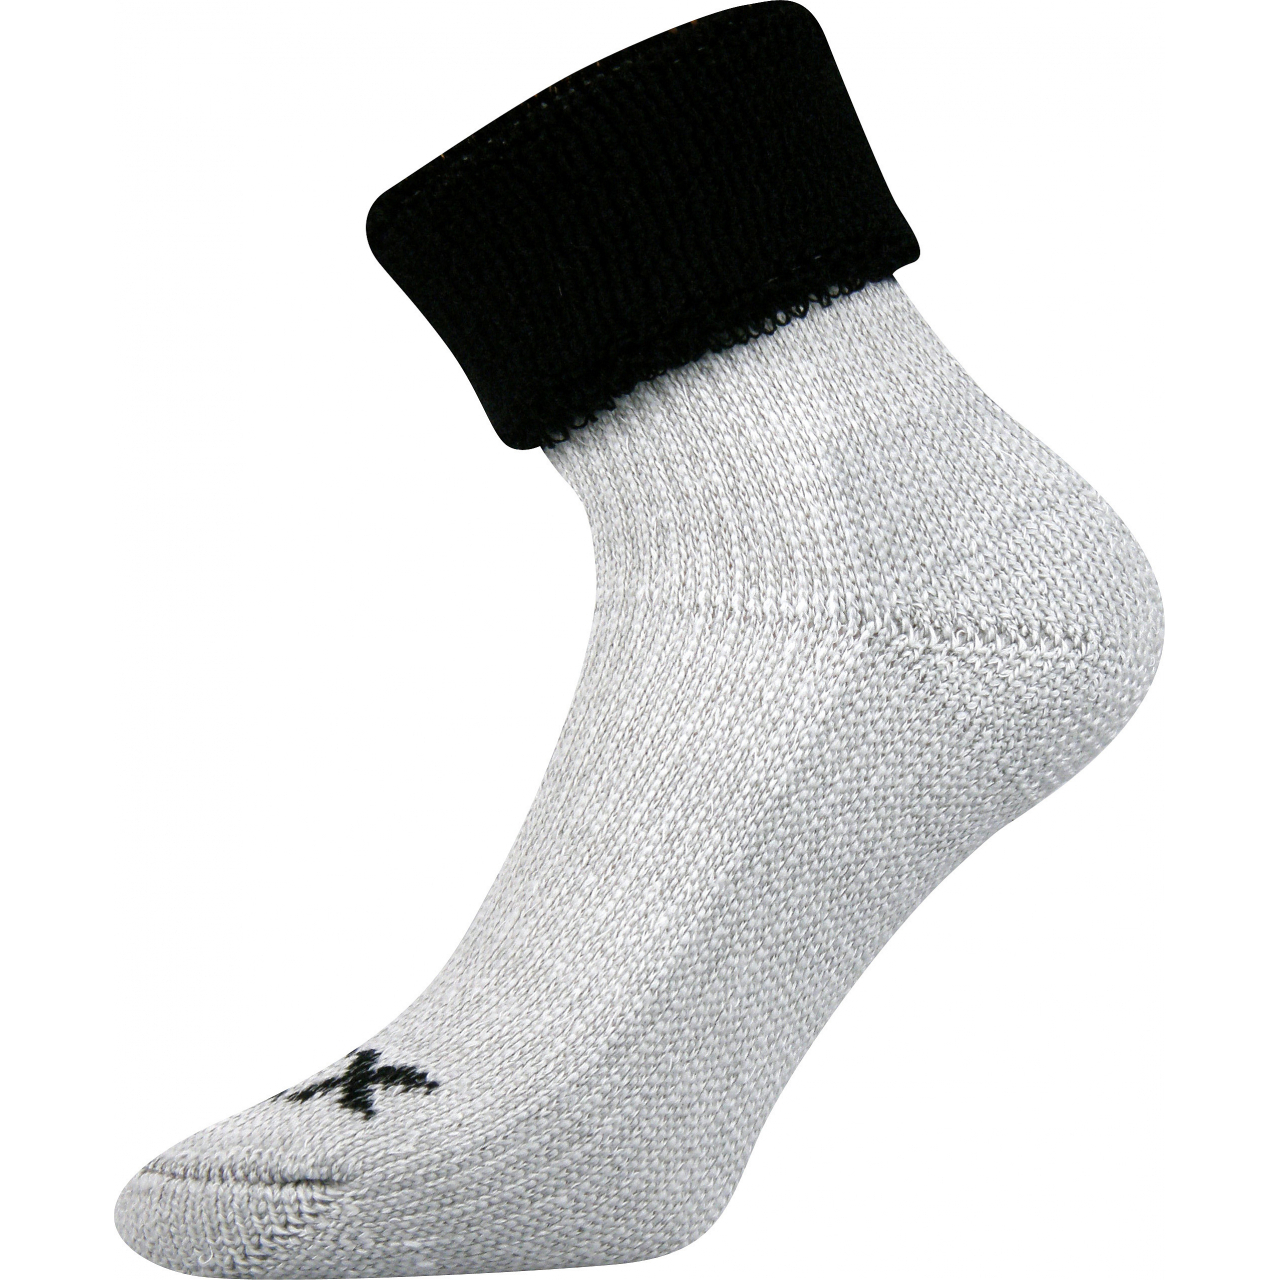 Ponožky dámské termo Voxx Quanta - šedé-černé, 39-42